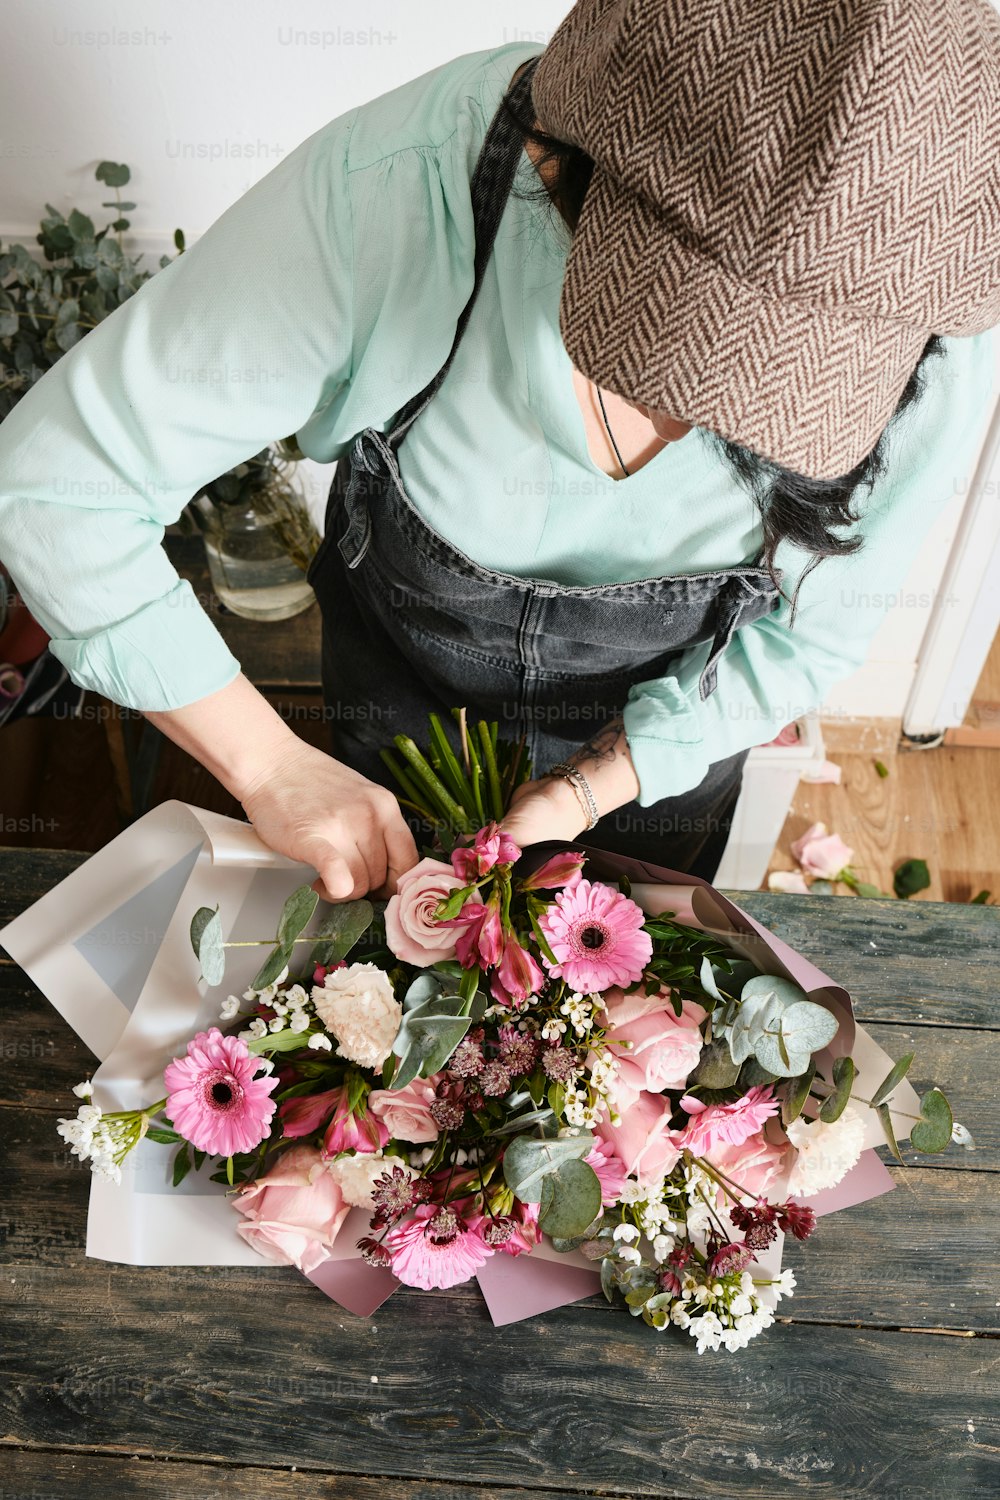 Une femme arrangeant un bouquet de fleurs sur une table